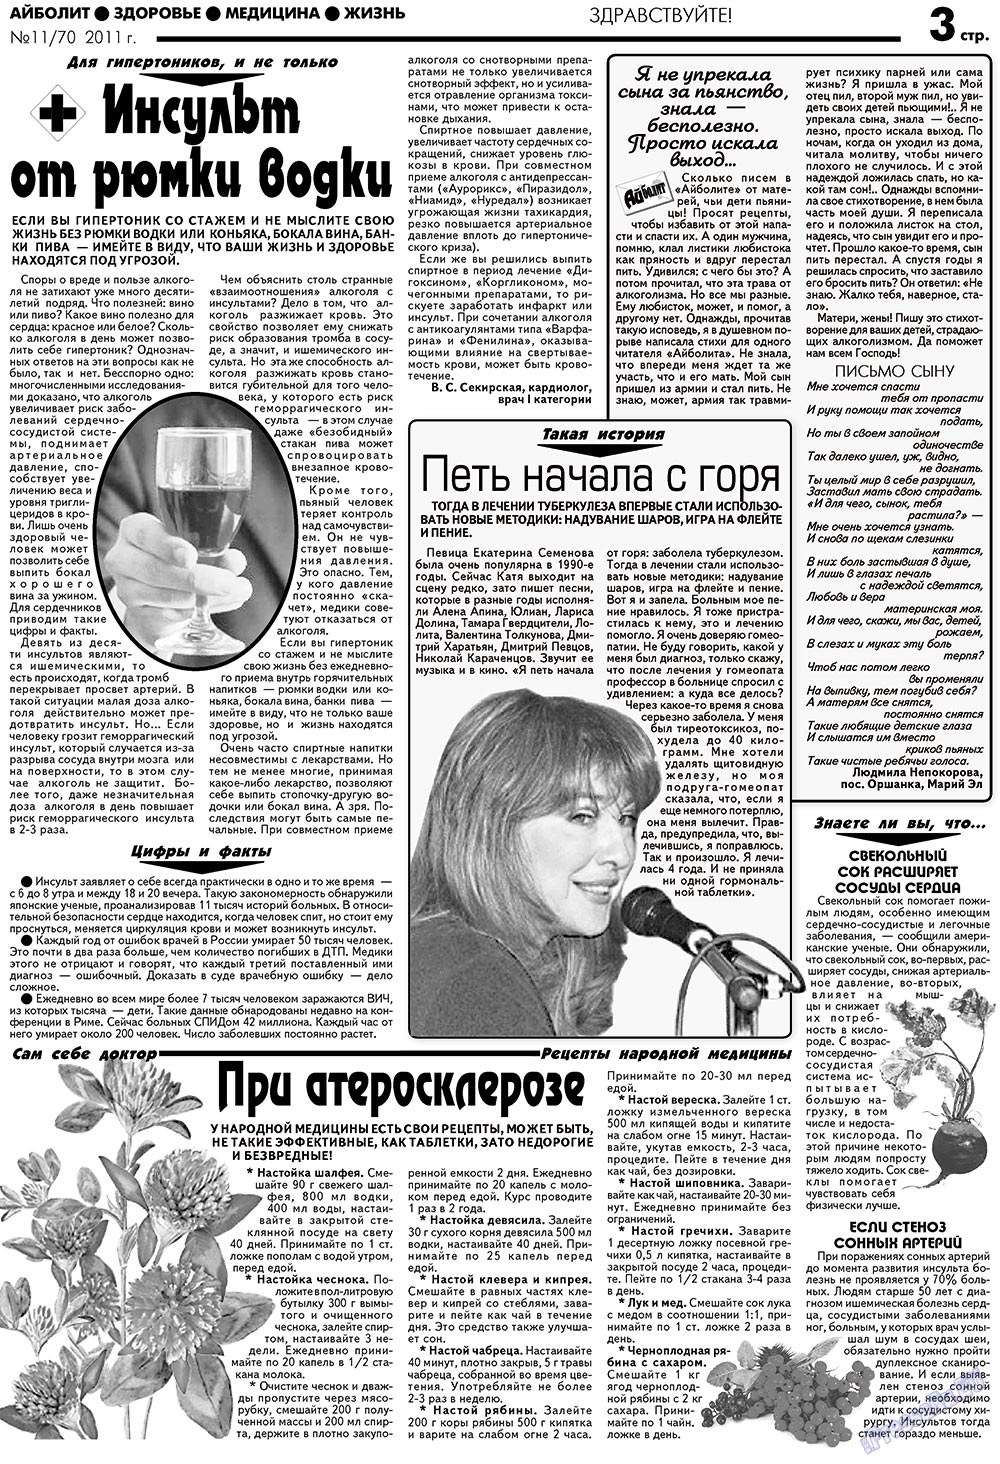 АйБолит, газета. 2011 №11 стр.3